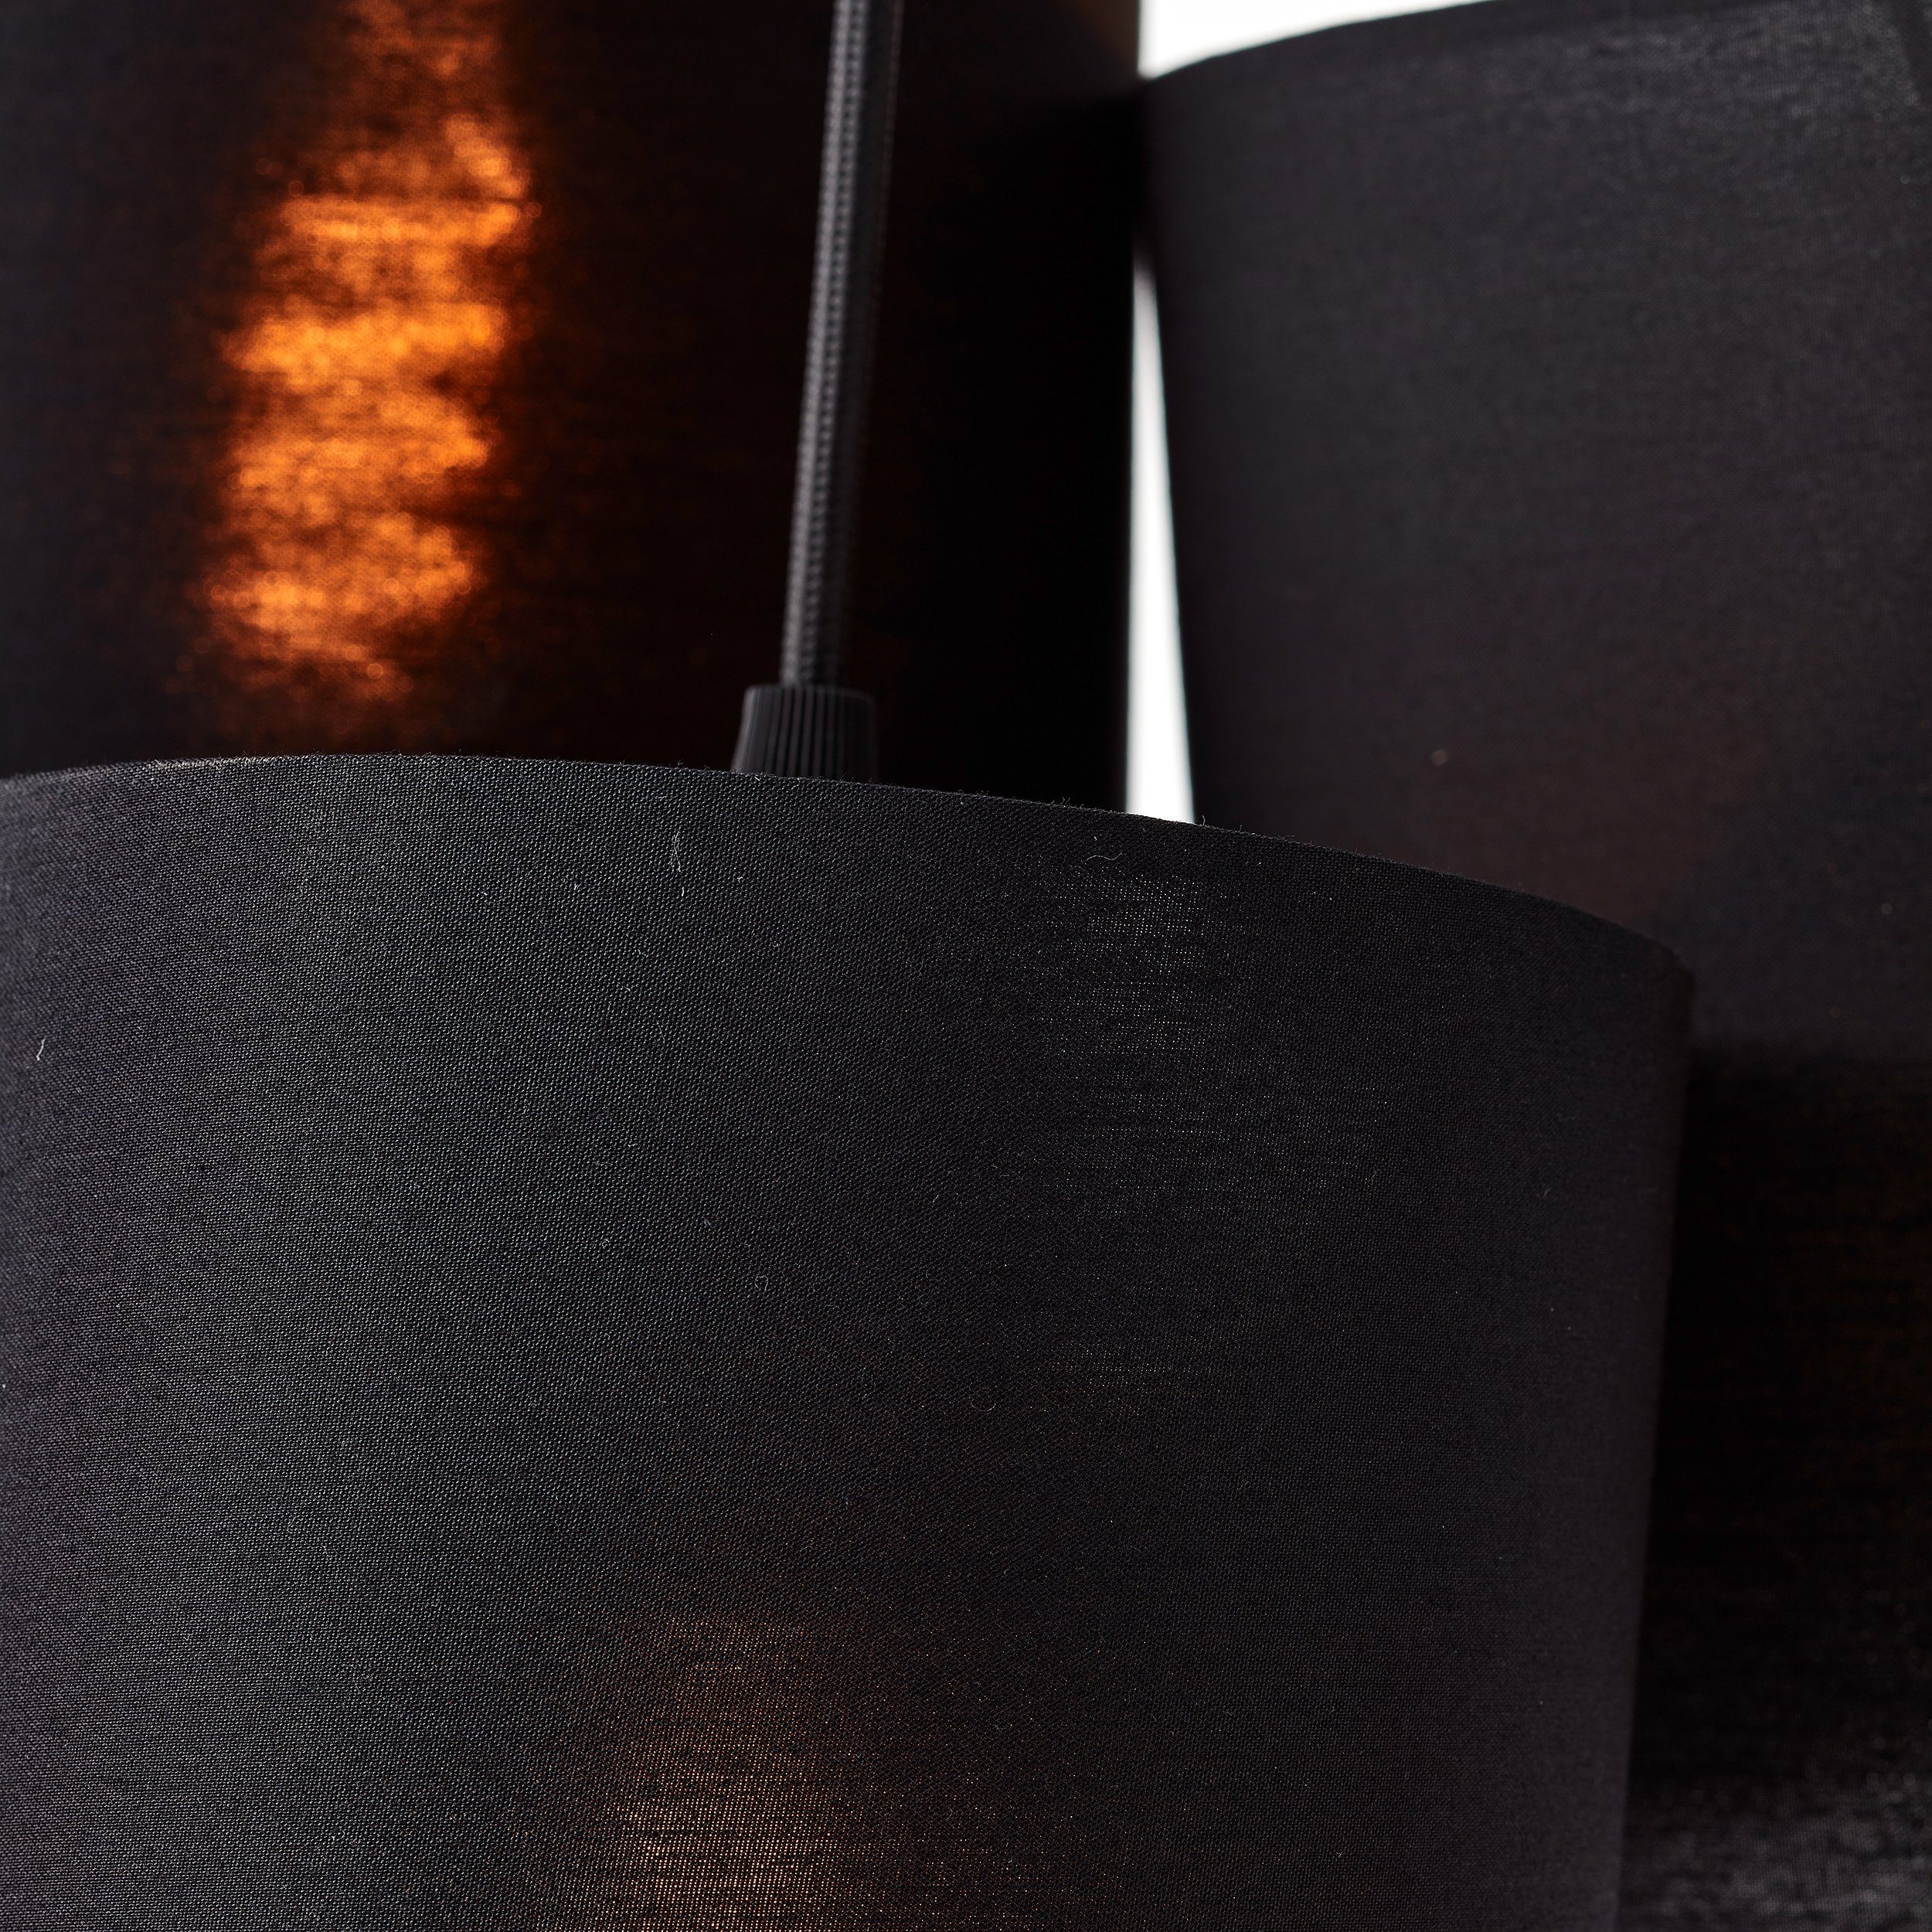 44cm Pendelleuchte of Style Leuchtmittel, Ø Elijah, Textilschirm schwarz Hängelampe Places ohne